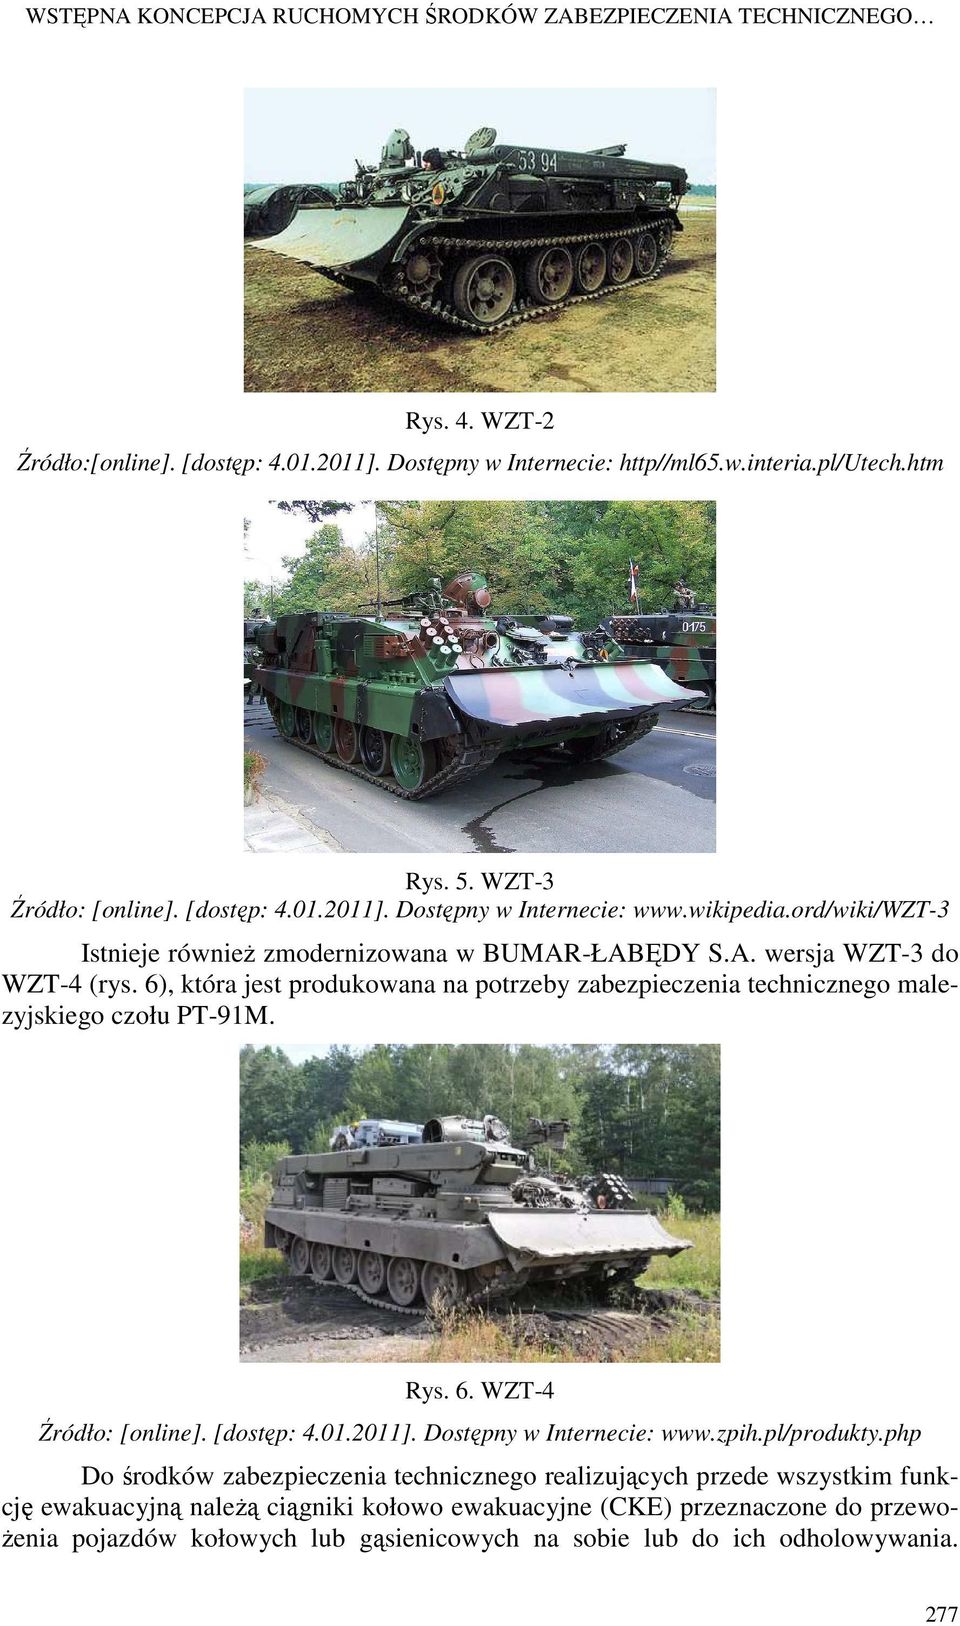 6), która jest produkowana na potrzeby zabezpieczenia technicznego malezyjskiego czołu PT-91M. Rys. 6. WZT-4 Źródło: [online]. [dostęp: 4.01.2011]. Dostępny w Internecie: www.zpih.pl/produkty.